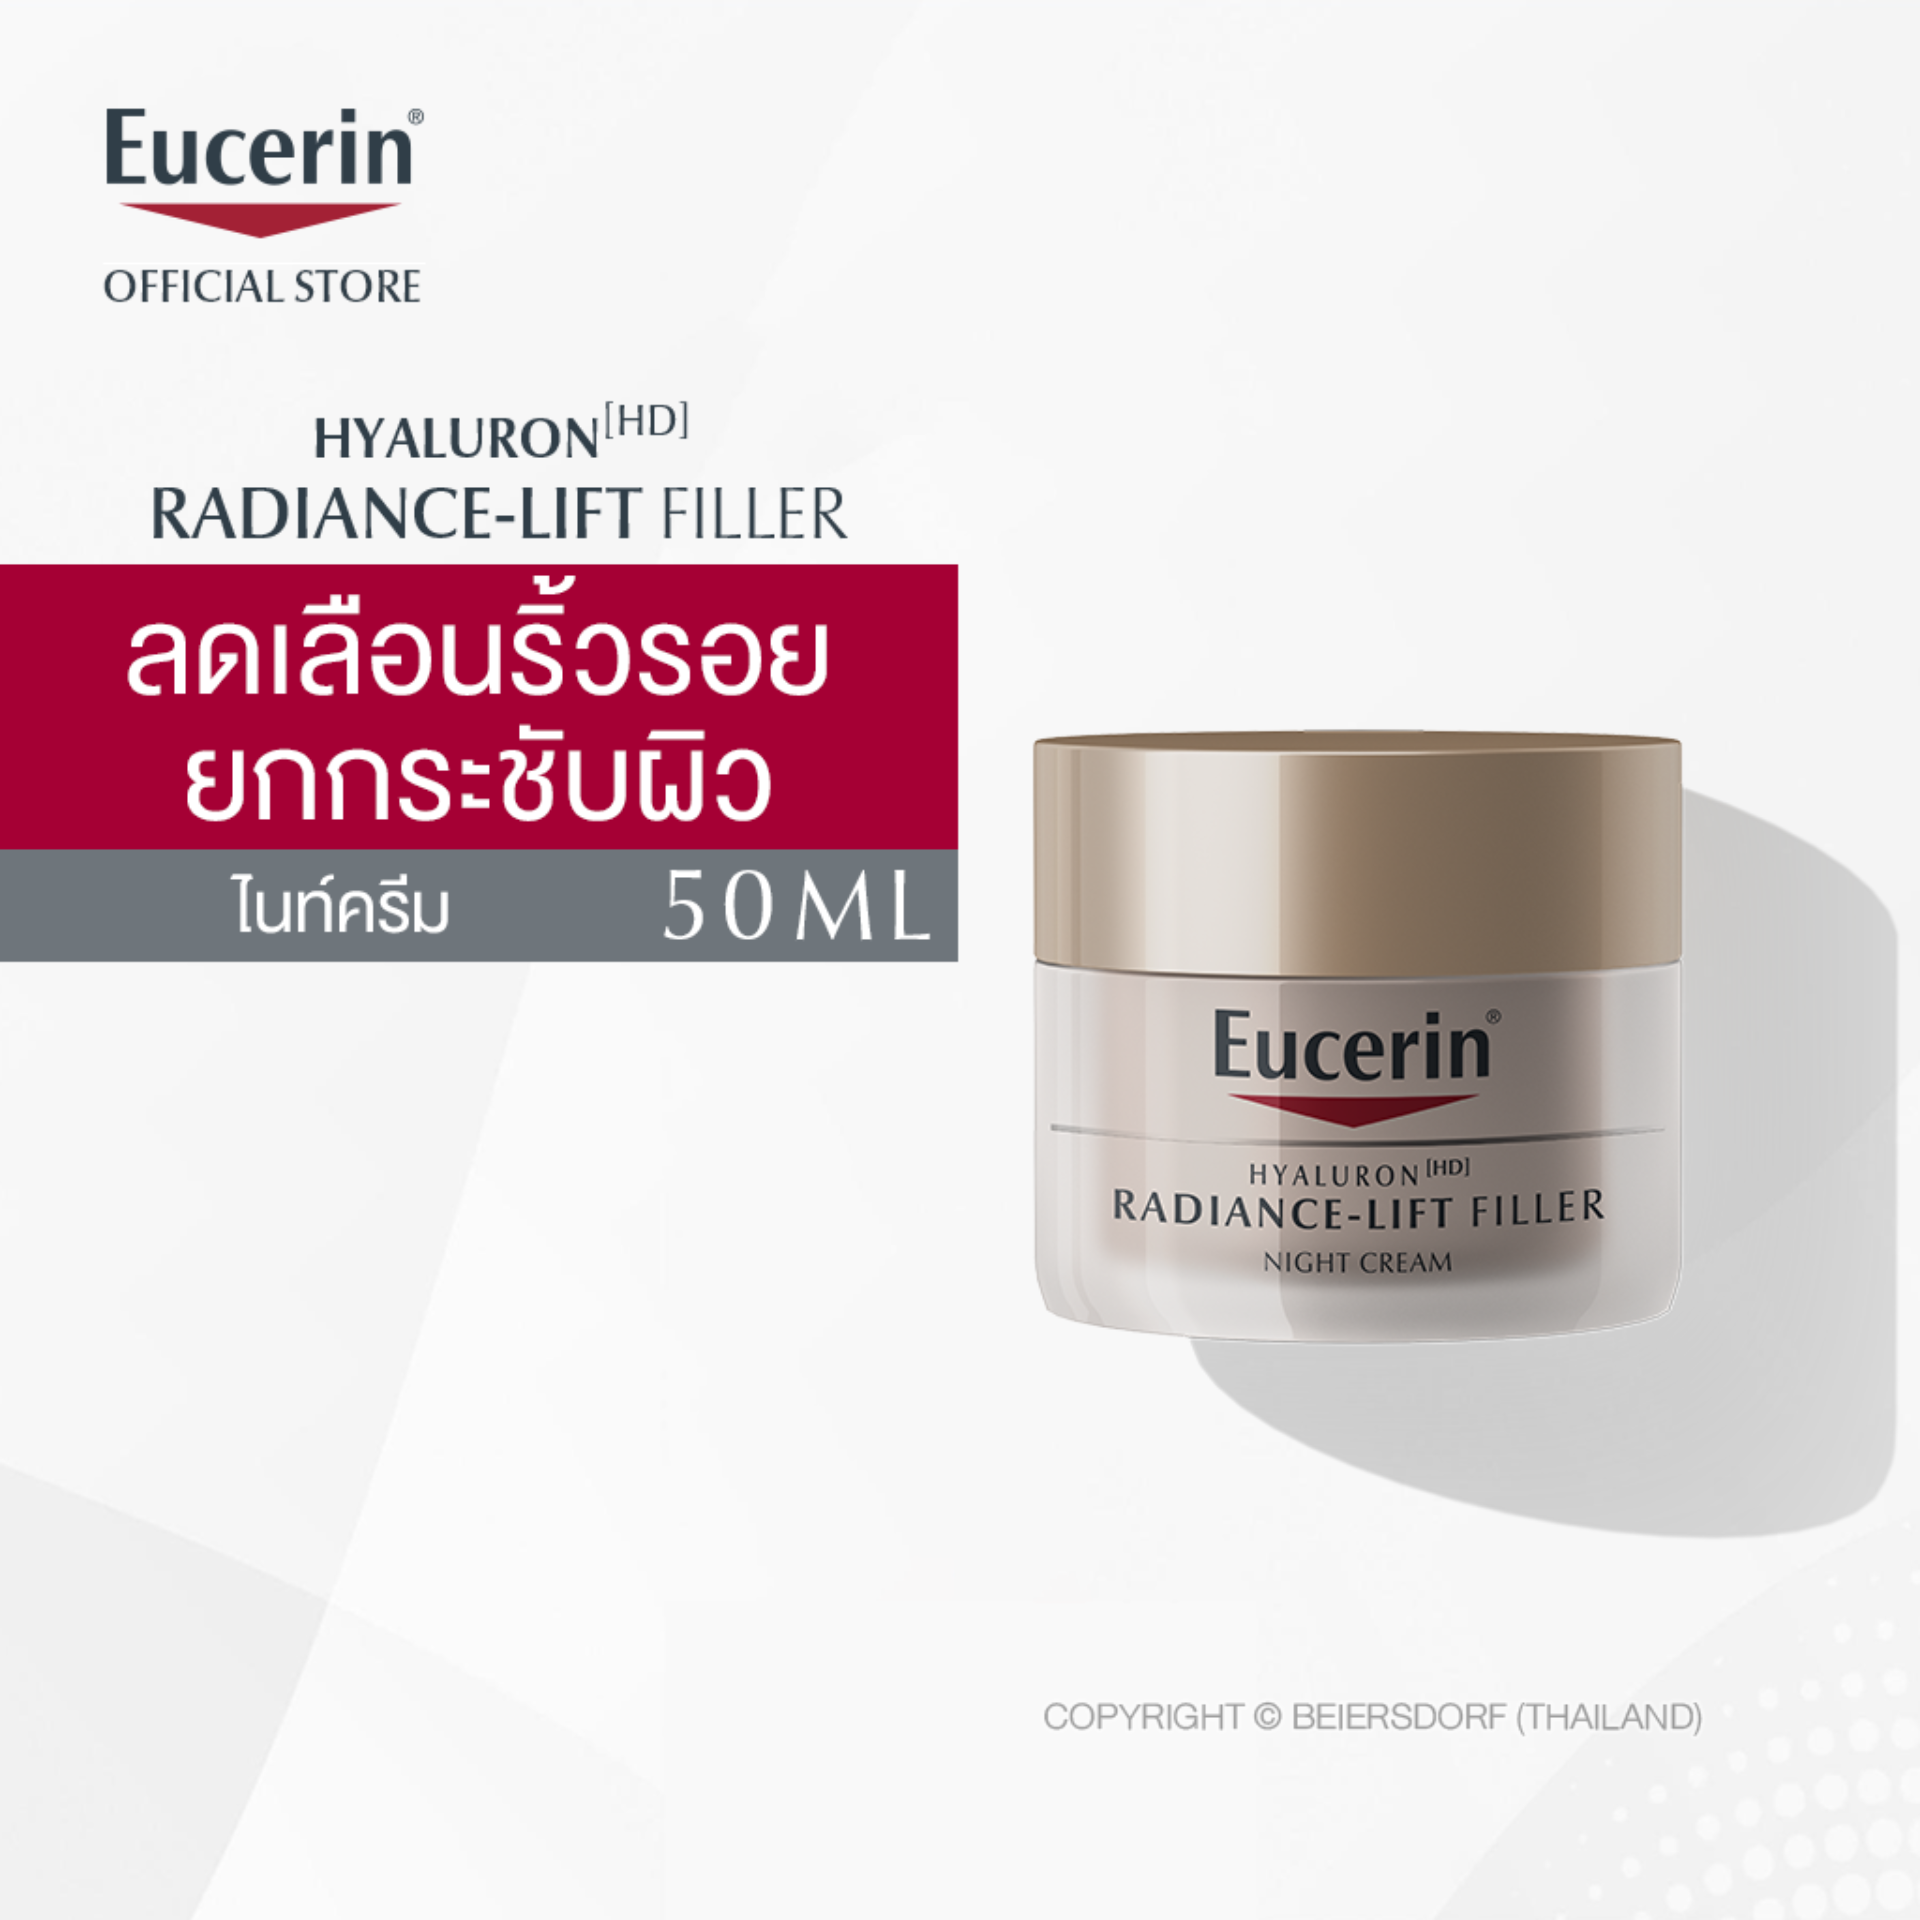 Eucerin Hyaluron [HD] Radiance-Lift Filler Night Cream 50ml ยูเซอริน ไฮยาลูรอน [เอชดี] เรเดียนซ์-ลิฟ ฟิลเลอร์ ไนท์ ครีม ครีมบำรุงผิวหน้า สูตรกลางคืน 50มล (ครีมบำรุงผิวหน้า ยกกระชับ ลดเลือนริ้วรอย)